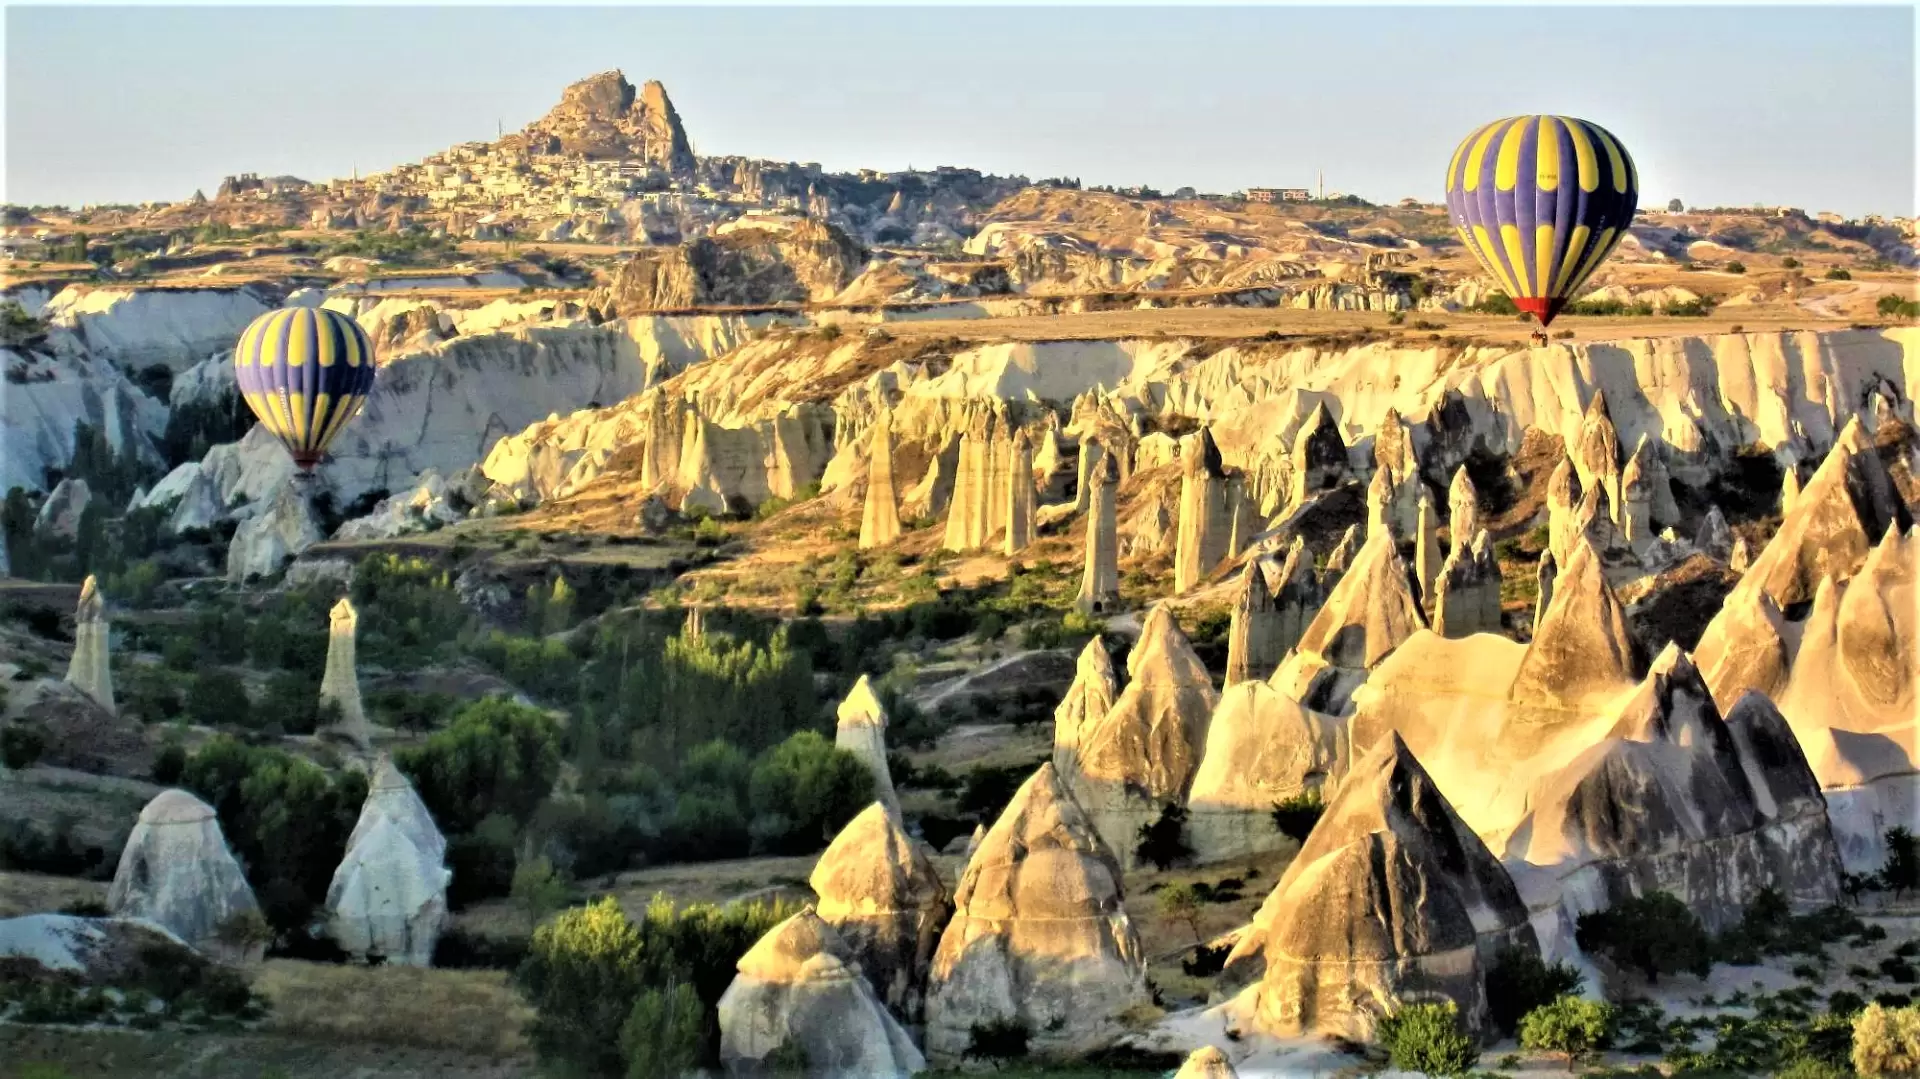 Paște în Turcia – Cappadocia